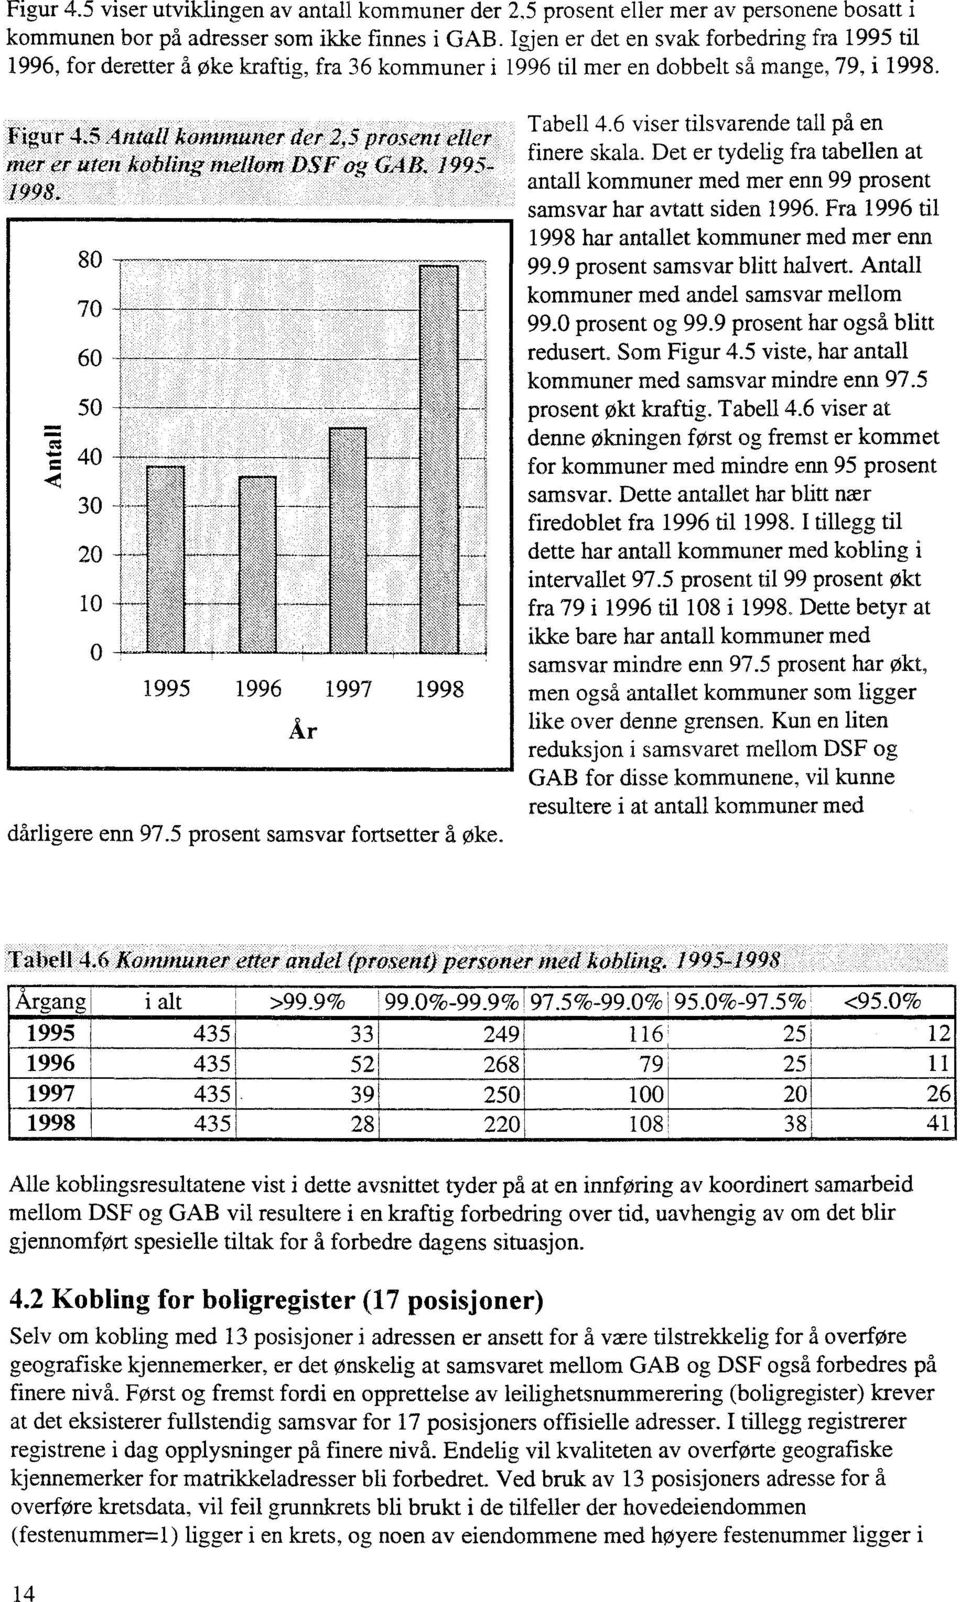 Figu r 48544ntall kalif/111111er der 2,5 prosent eller nter er mien kobling nieliofft DSF og GAB. 1995-1998. dårligere enn 97.5 prosent samsvar fortsetter å øke. Tabell 4.